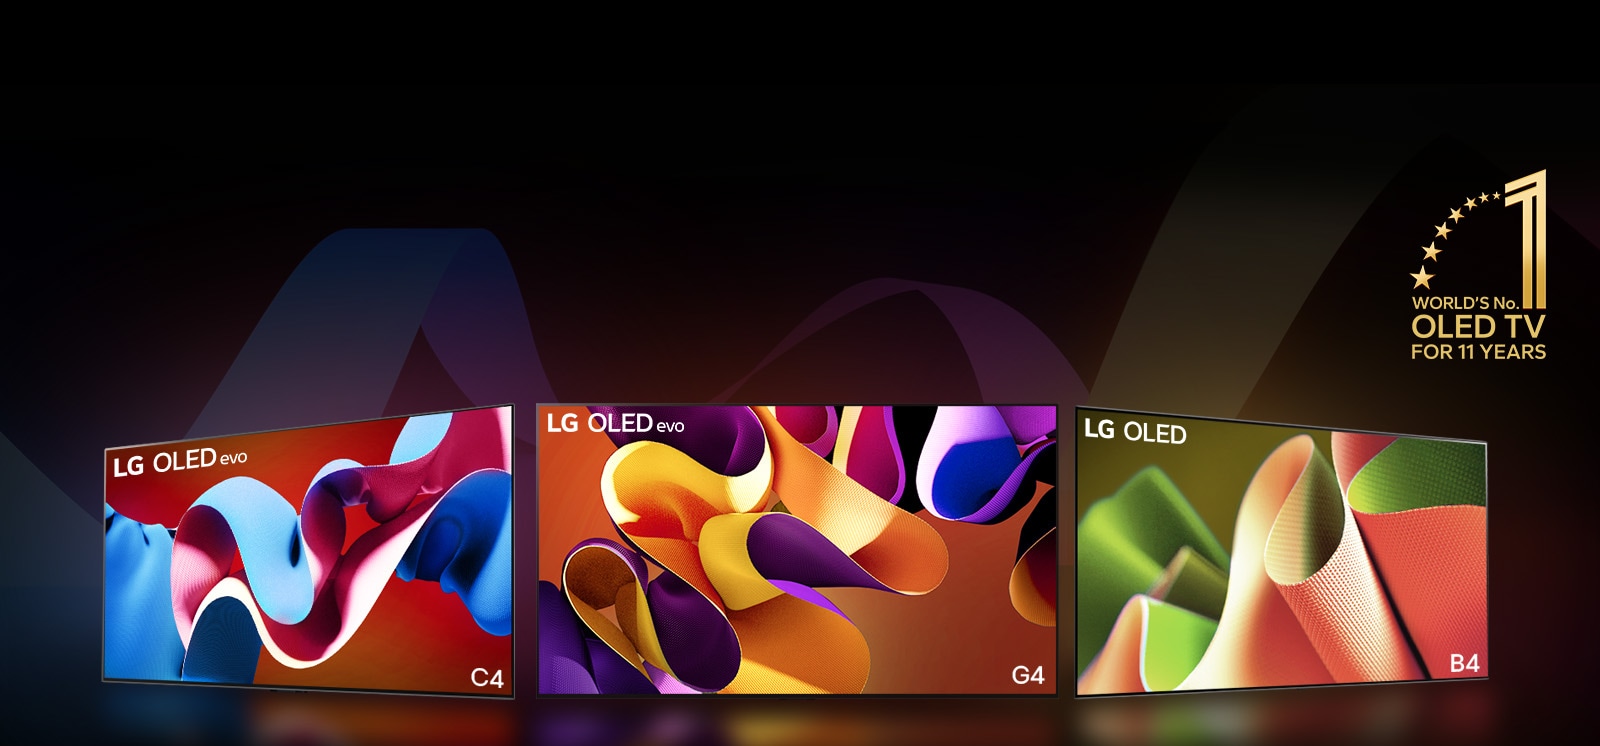 PC：LG OLED evo G4、LG OLED evo C4 和 LG OLED B4 并排放置，每台电视的屏幕上显示颜色不一的抽象艺术作品。每天电视投射光线至下方的地面。右上角有“World's number 1 OLED TV for 11 Years（连续 11 年全球最佳 OLED TV）”金色标志。  MO：LG OLED evo G4、LG OLED evo C4 和 LG OLED B4 排成一行，每台电视的屏幕上显示颜色不一的抽象艺术作品。每天电视投射光线至下方的地面。右上角有“World's number 1 OLED TV for 11 Years（连续 11 年全球最佳 OLED TV）”金色标志。